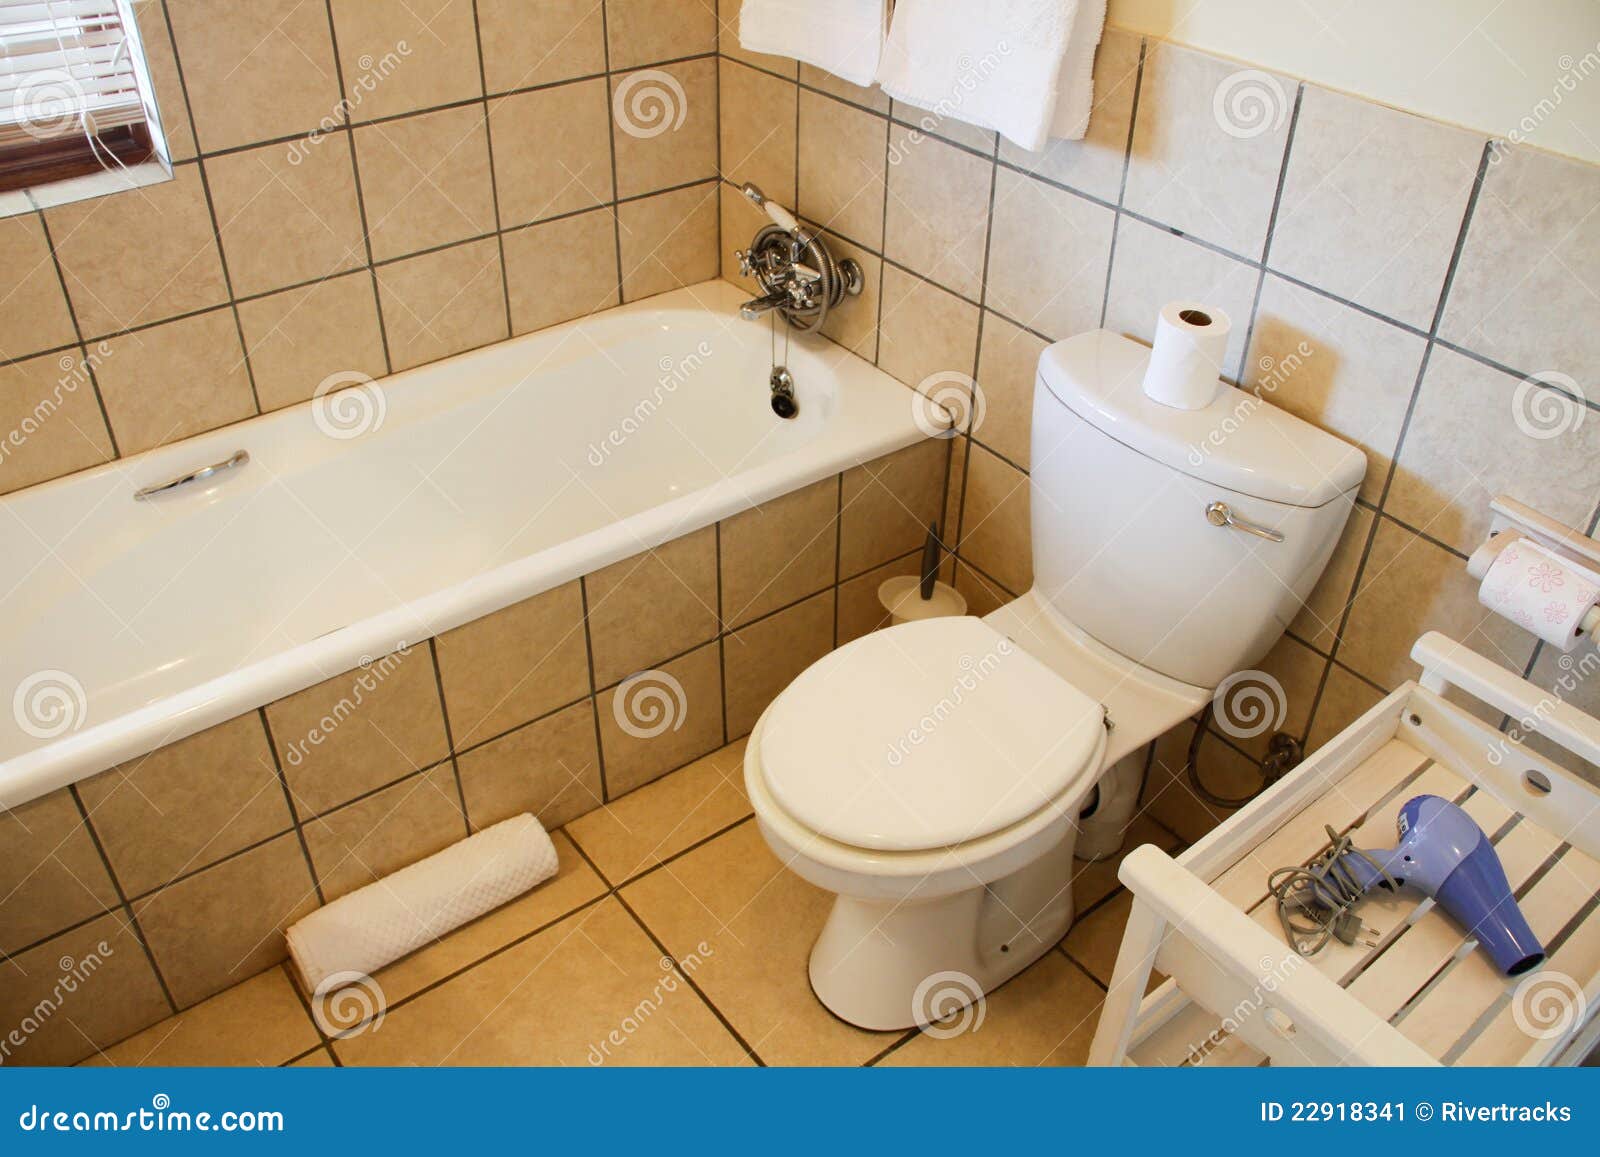 Modernes Badezimmer stockbild. Bild von haus, fliesen - 22918341